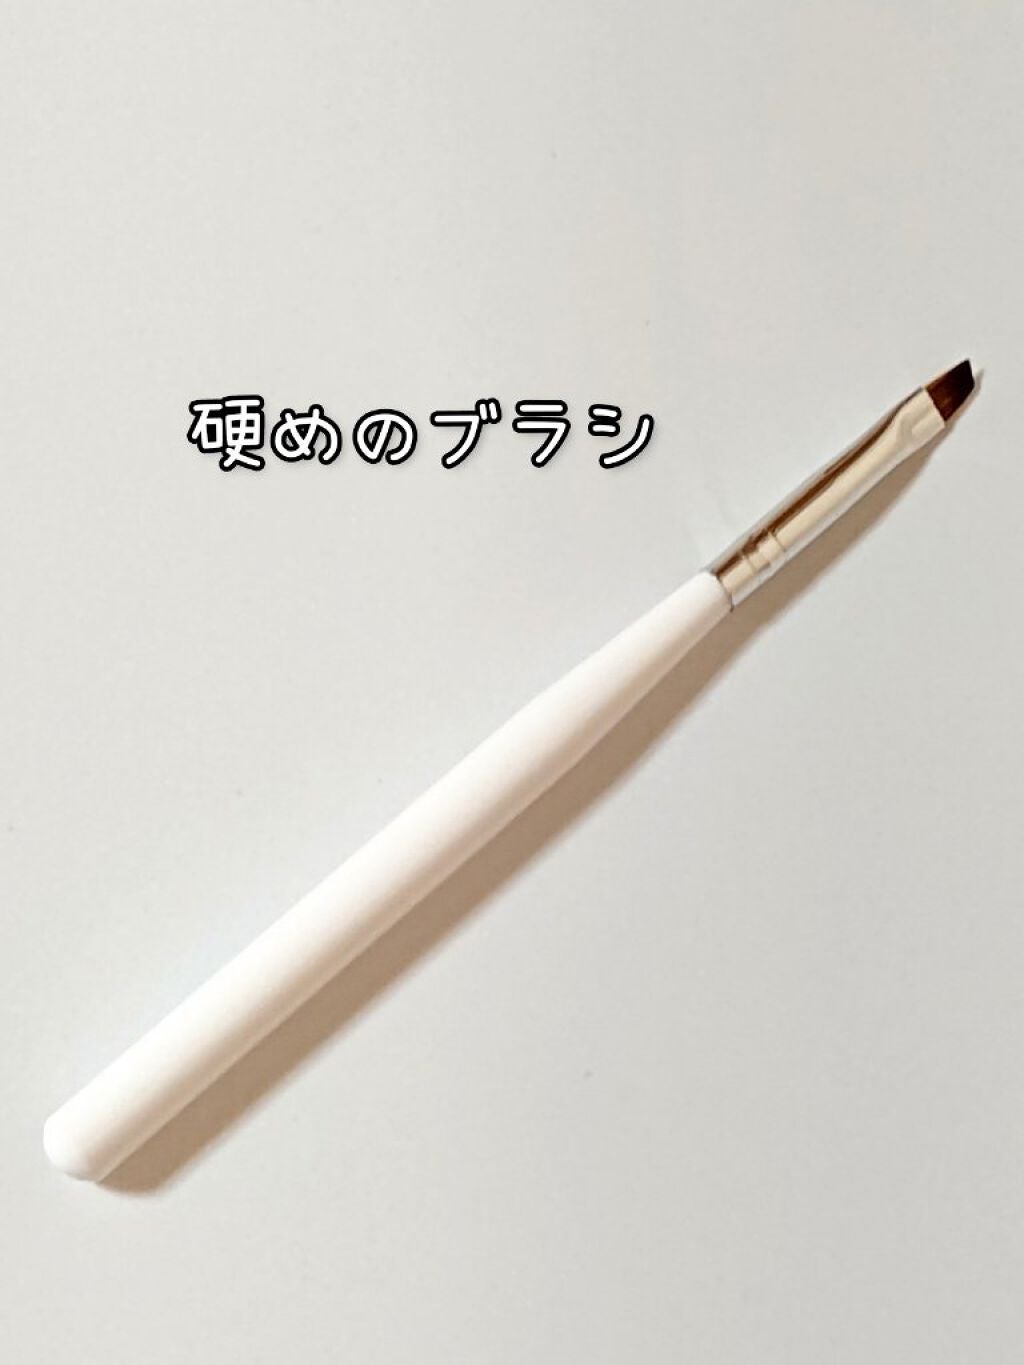 ネイルブラシ フレンチ/DAISO/ネイル用品 by ゆずぽん